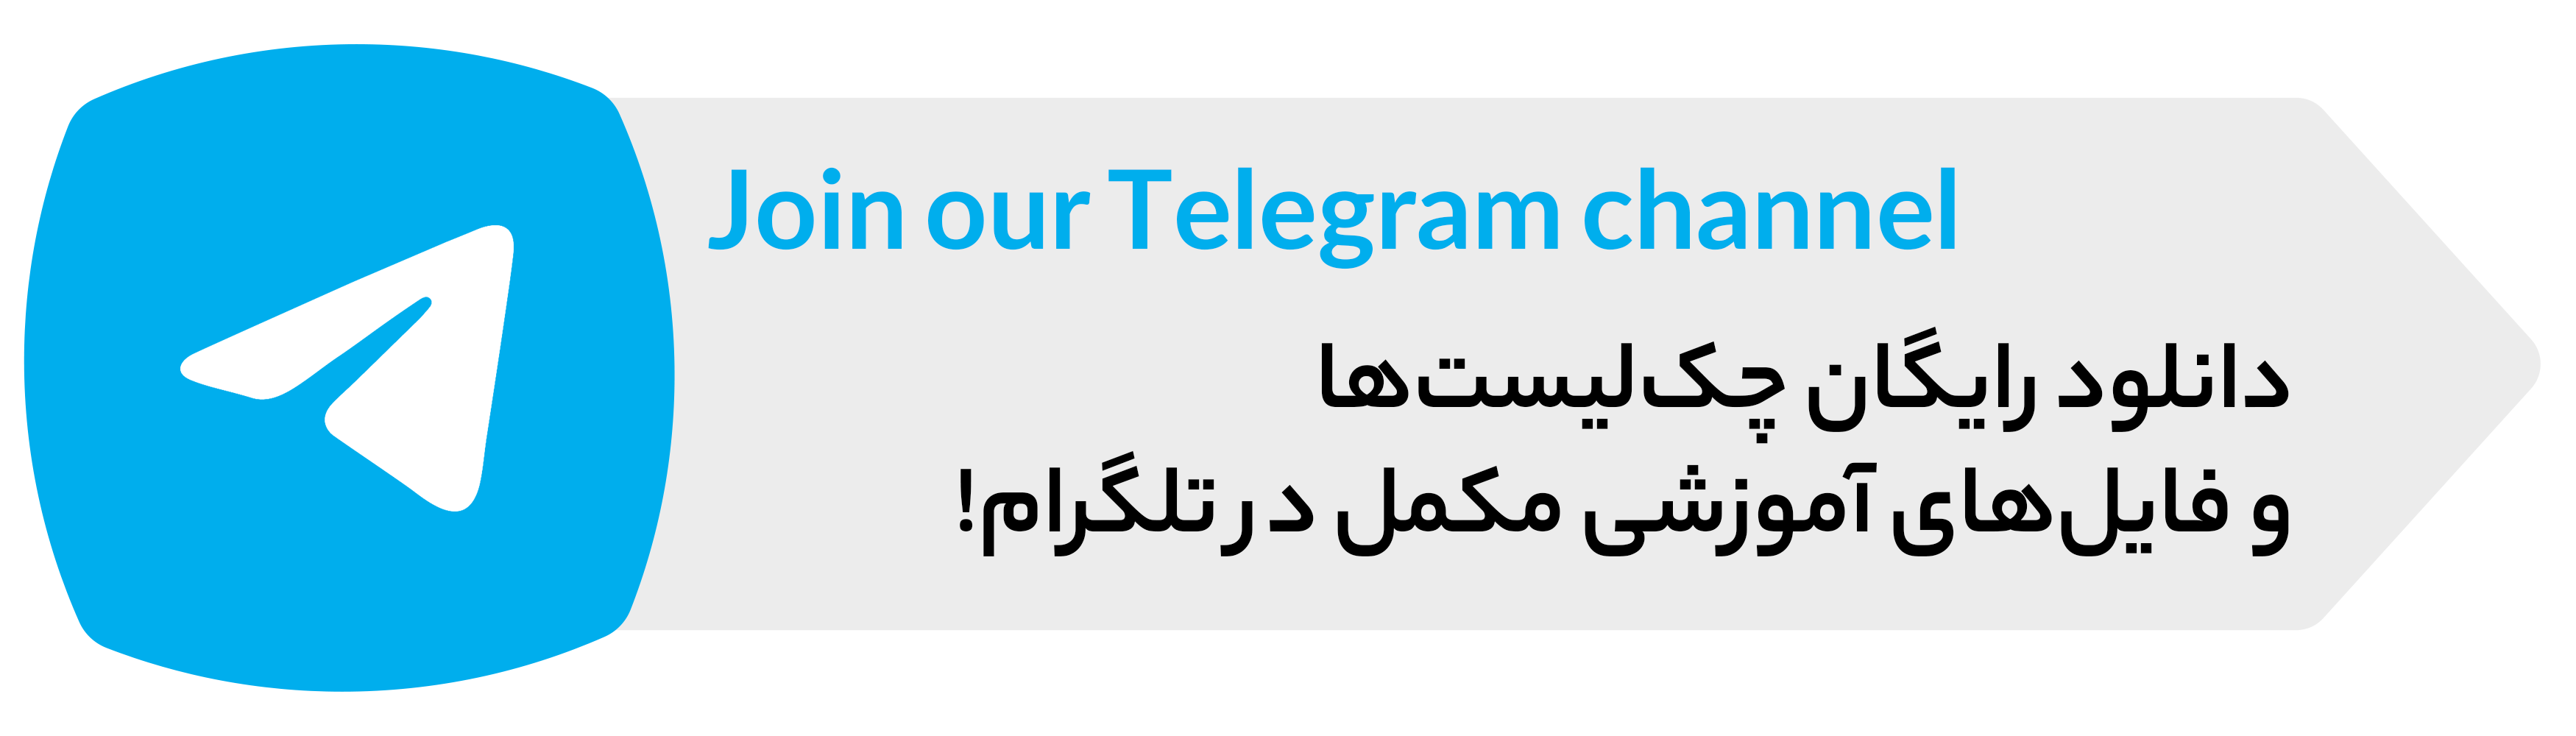 کانال تلگرام مجموعه آموزشی زیر صفر